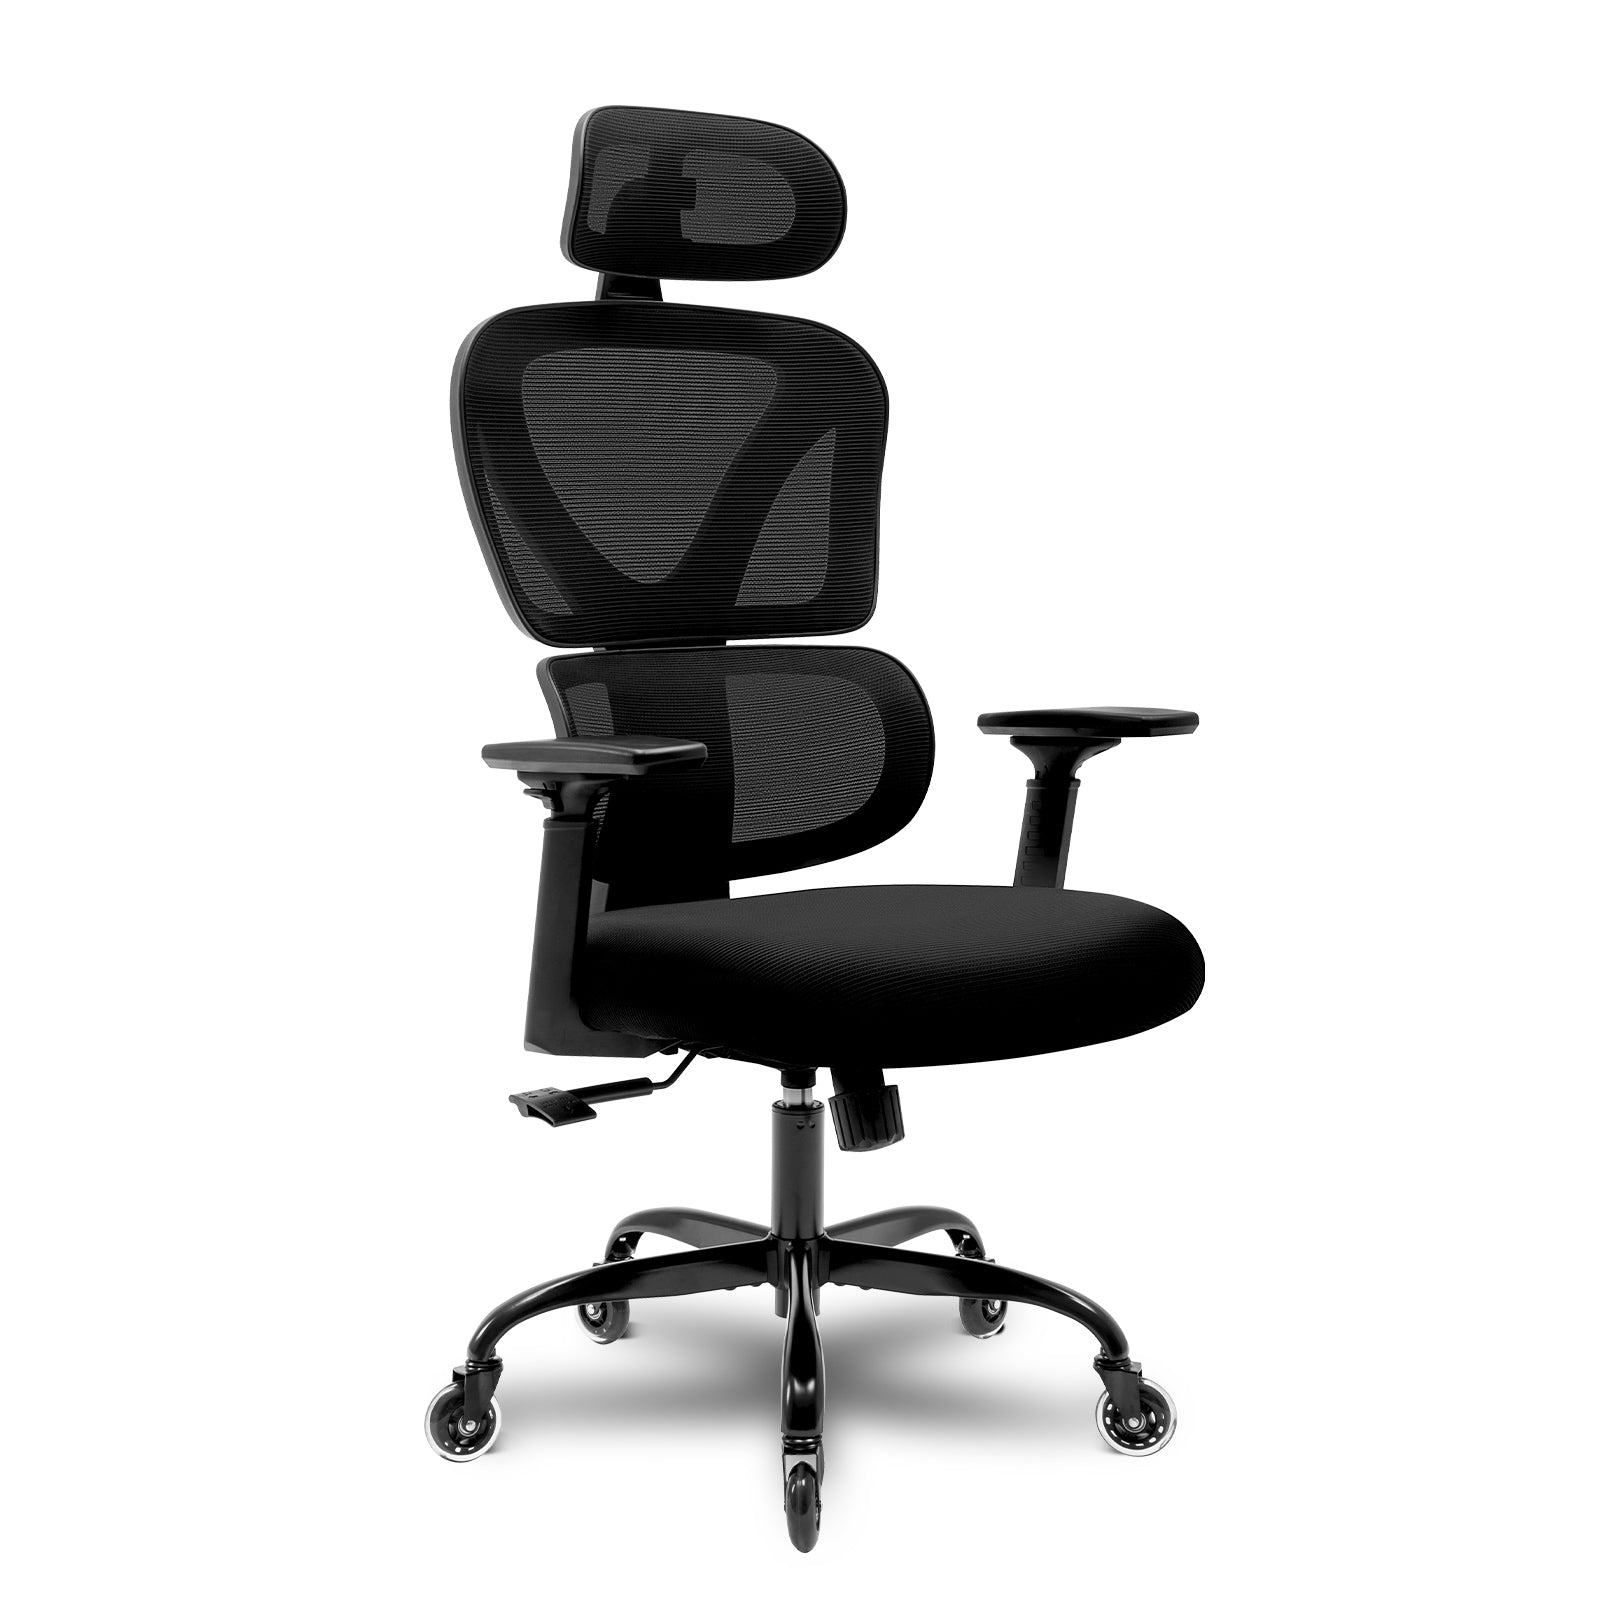 KERDOM High Back Ergonomic Office Chair for Wooden Floor White